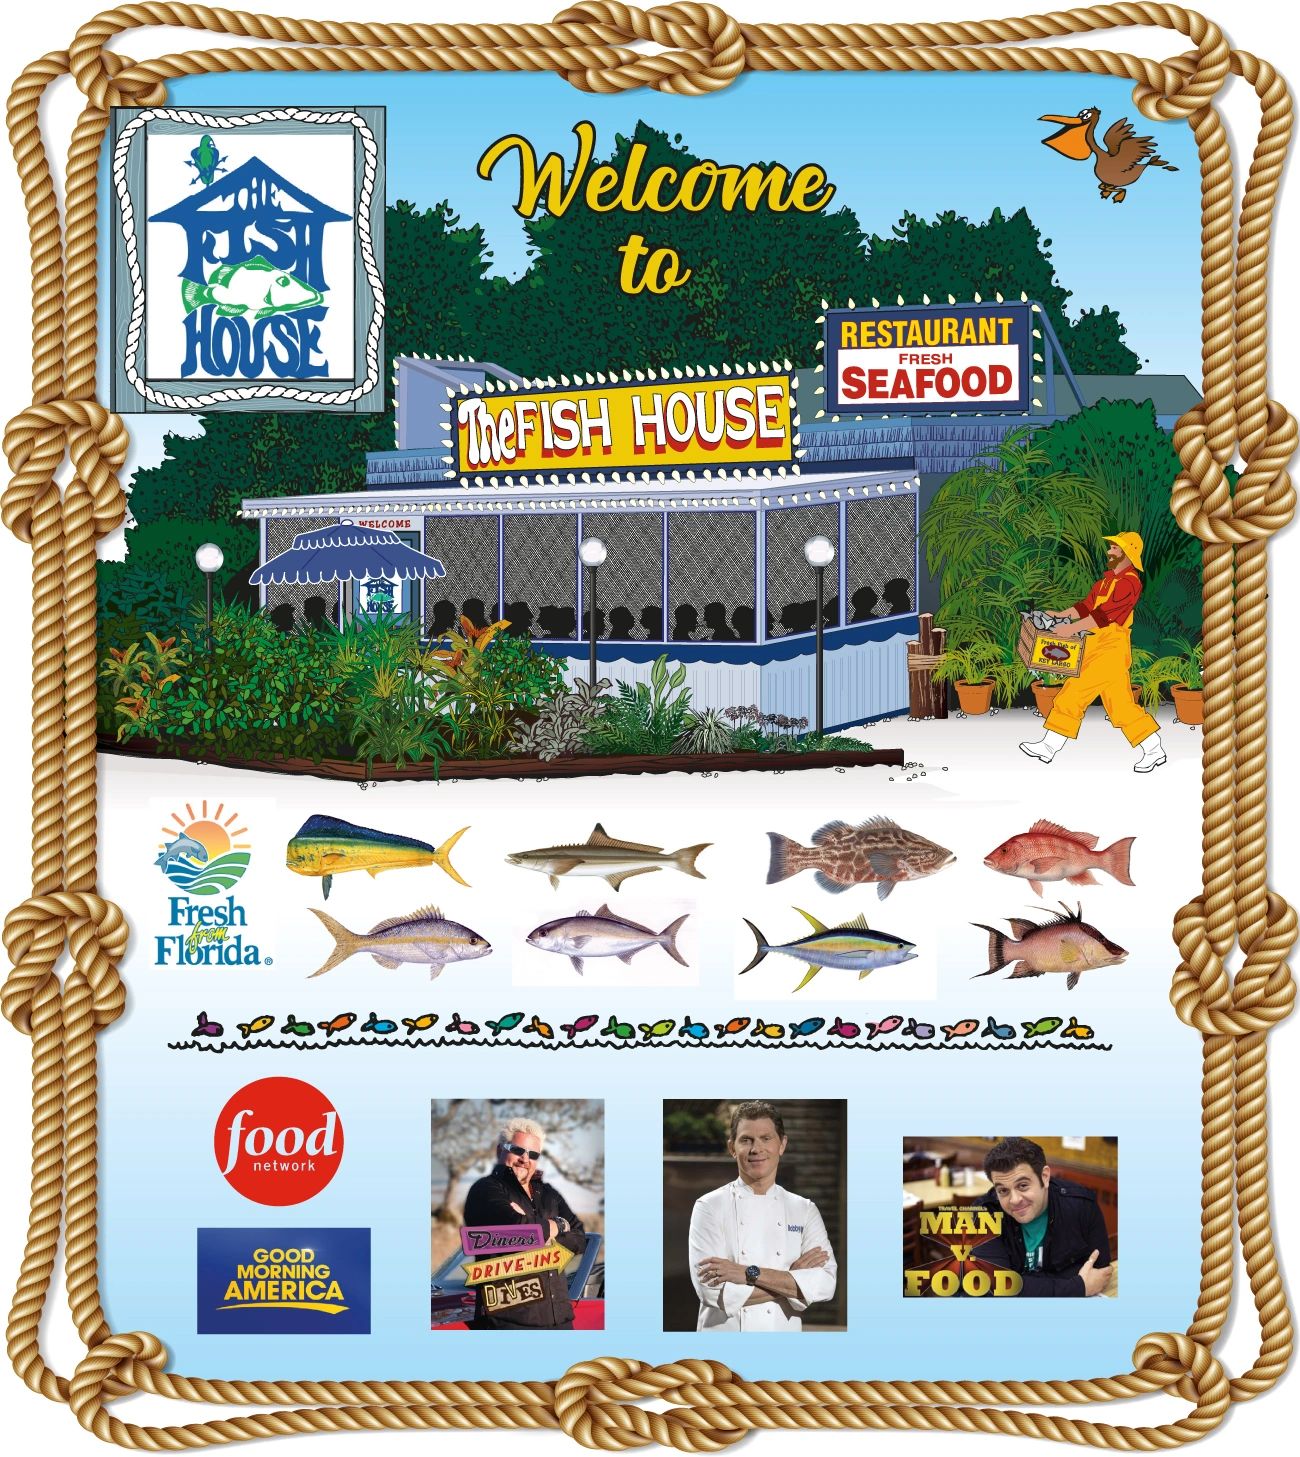 fishhouse.com